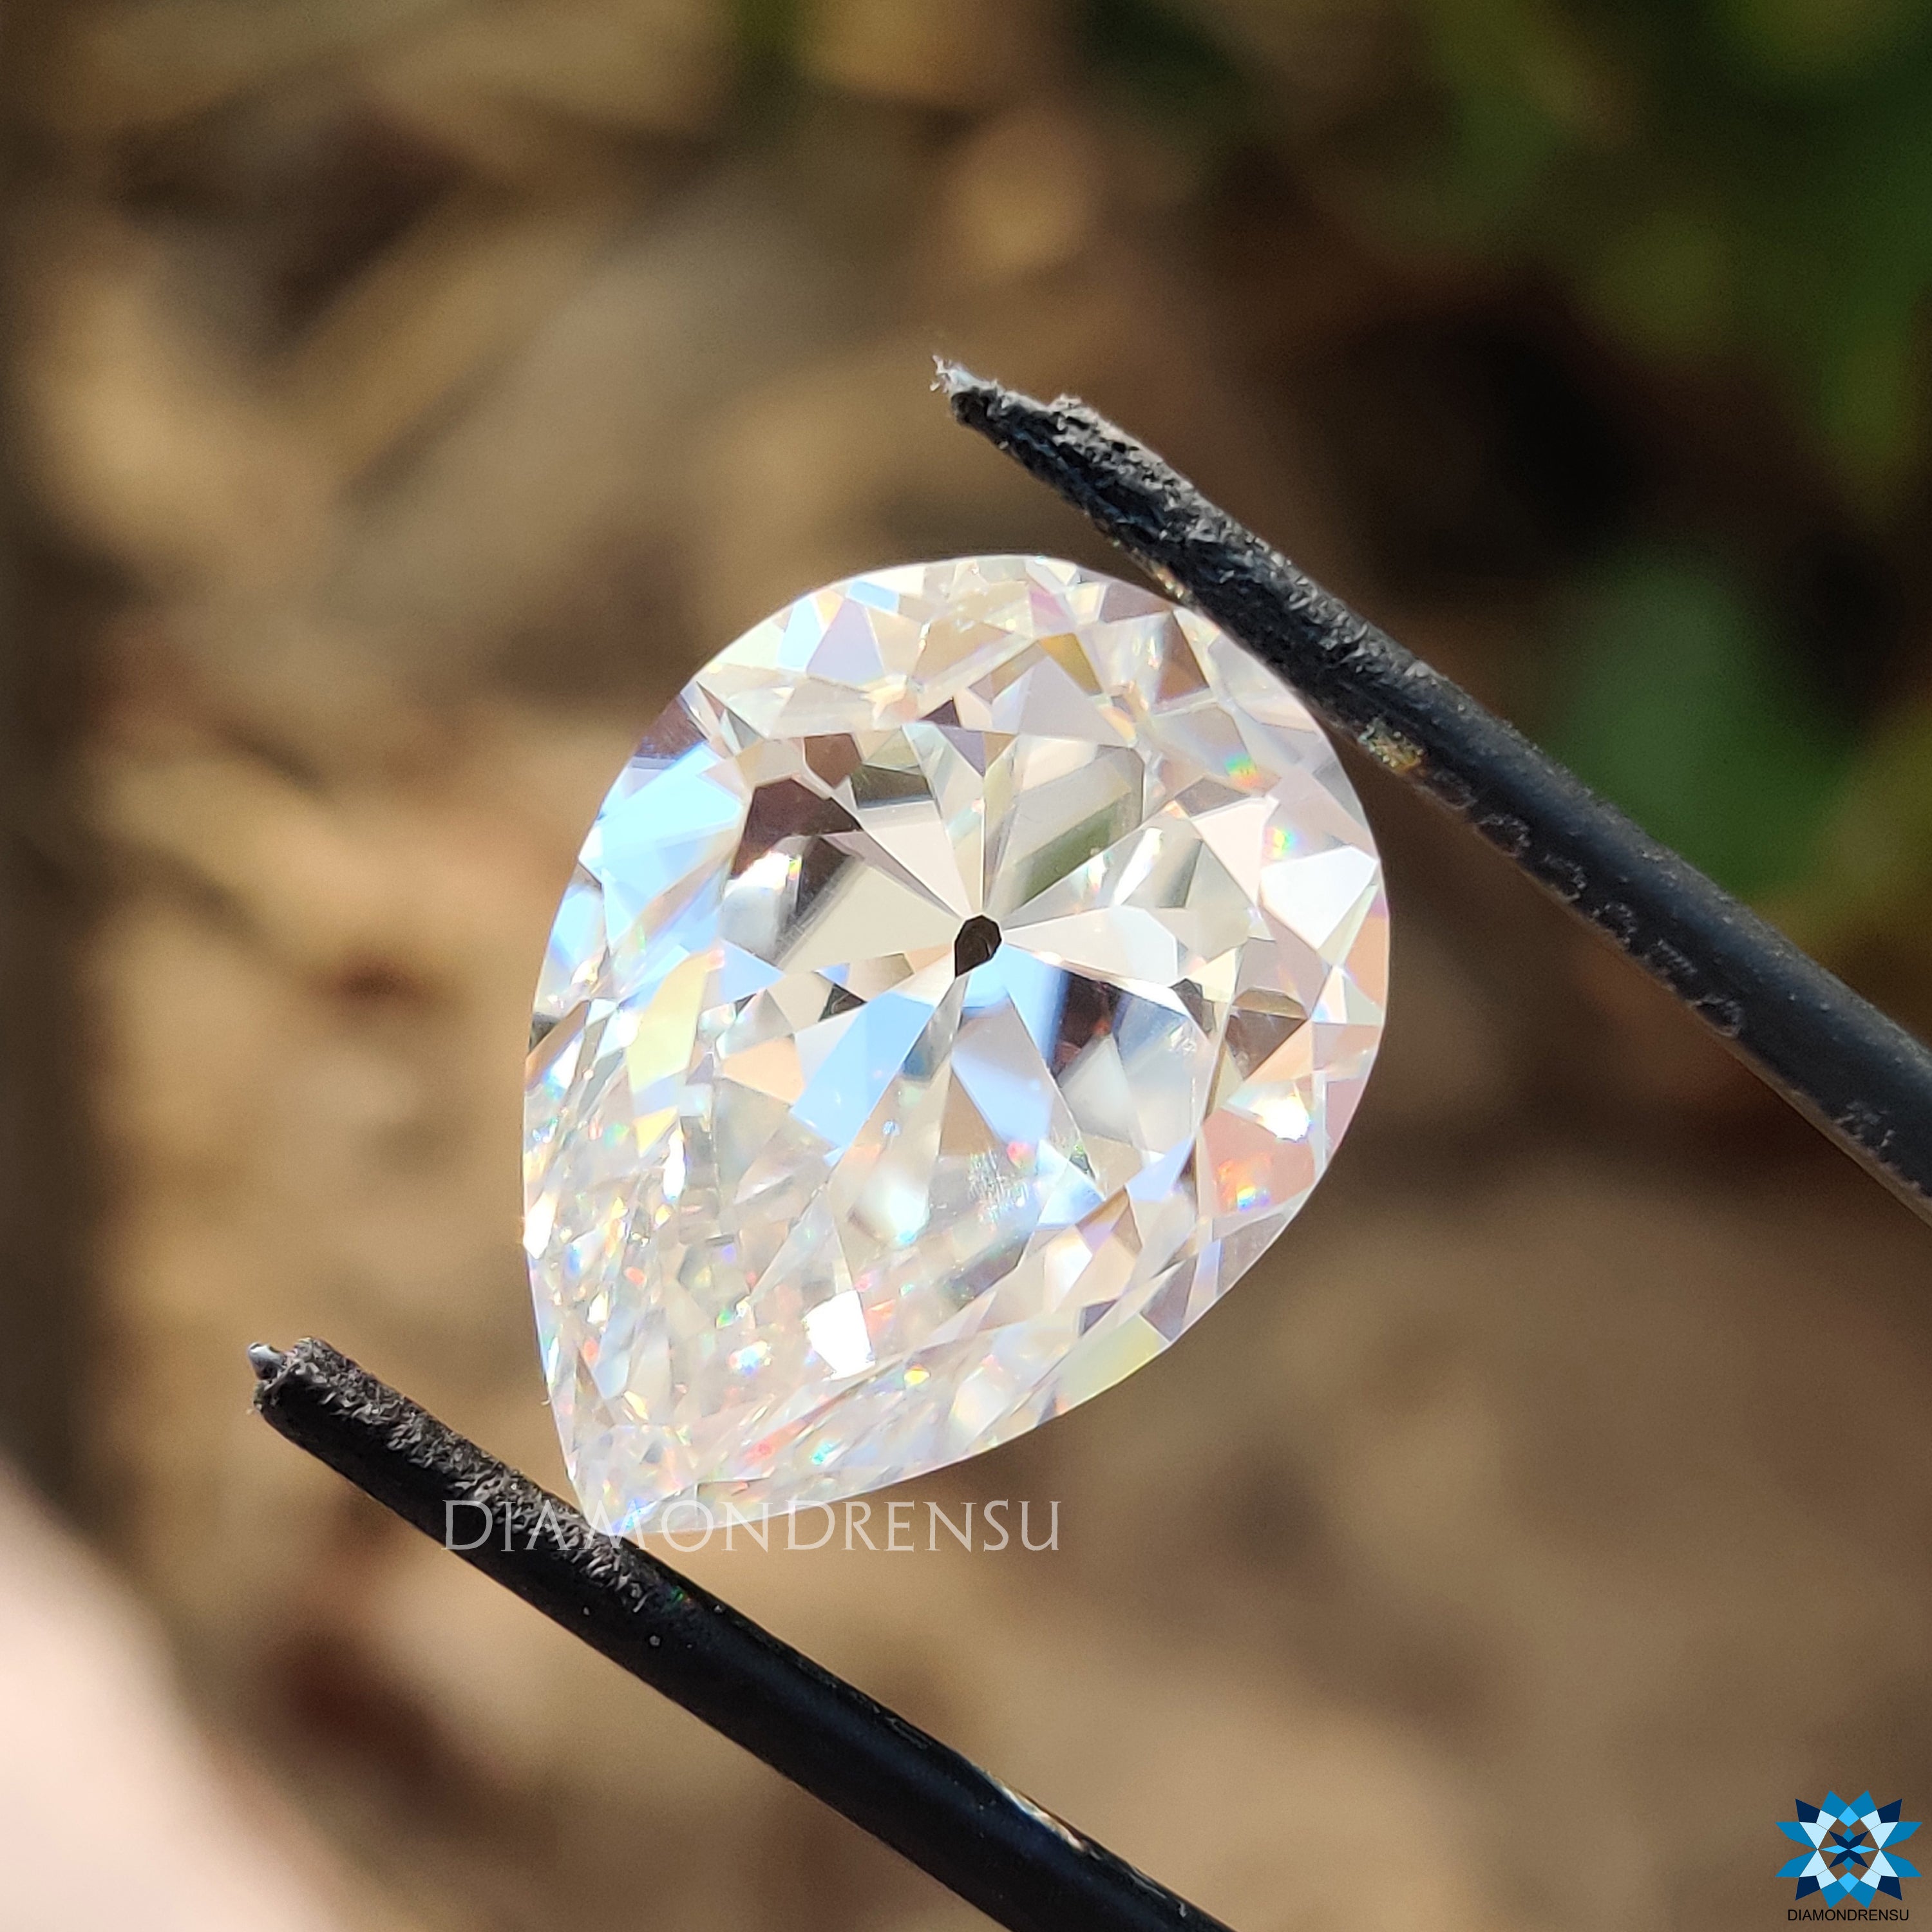 loose moissanite diamond - diamondrensu